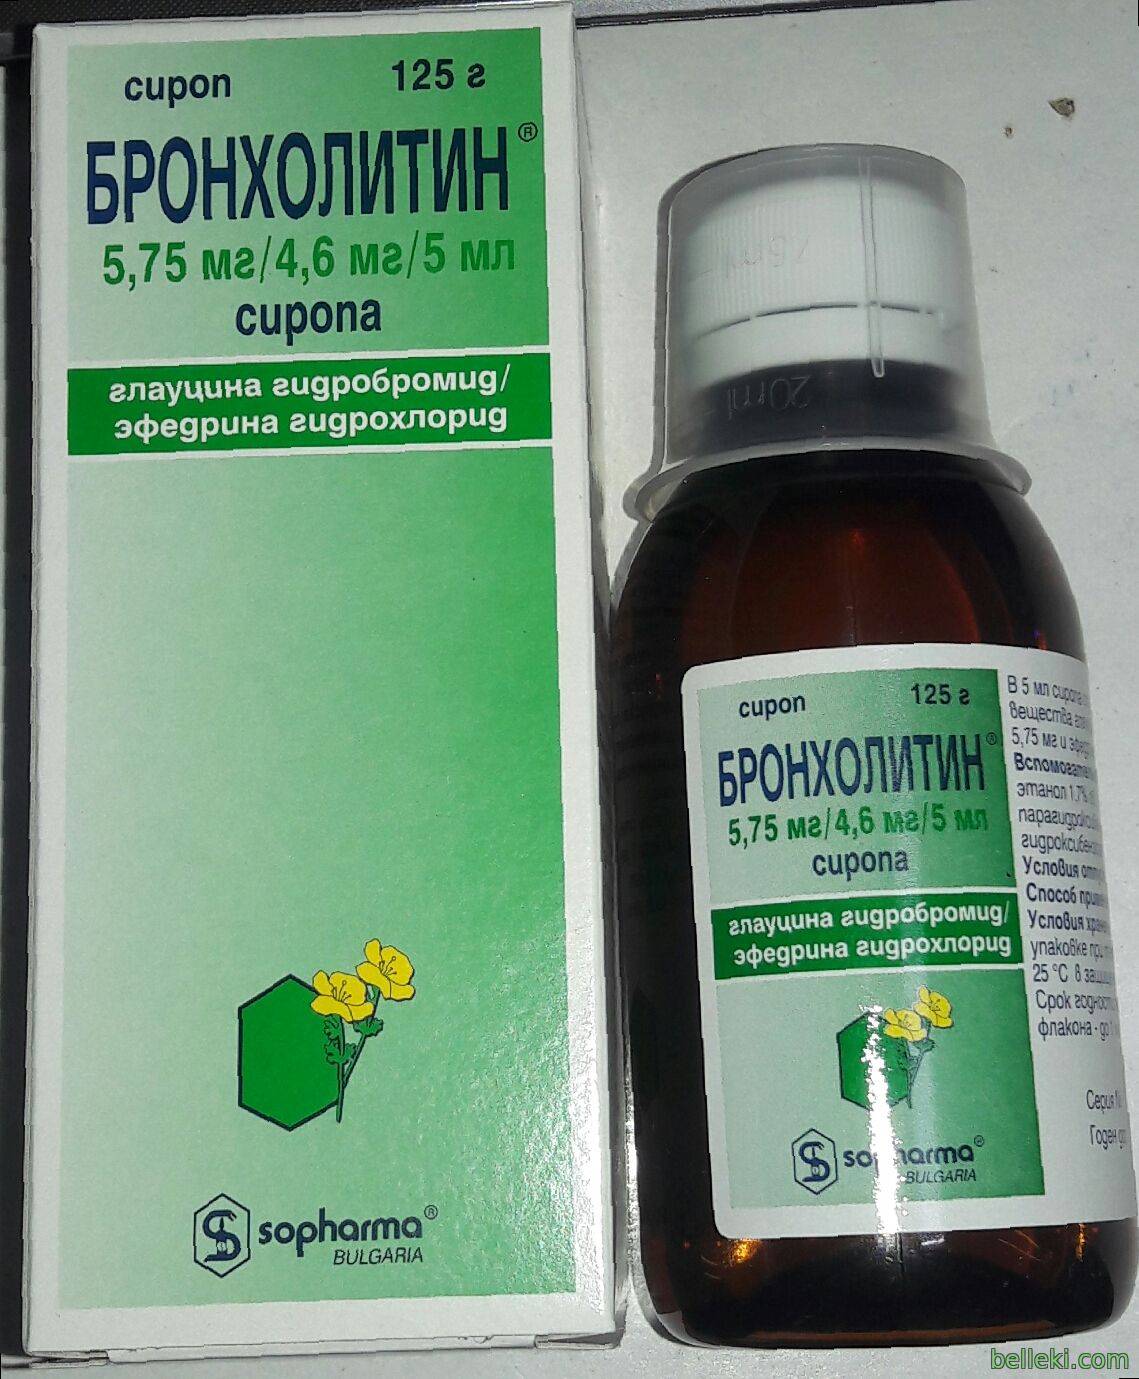 Бронхолитин и его состав: инструкция по применению сиропа для лечения взрослых и детей, противопоказания